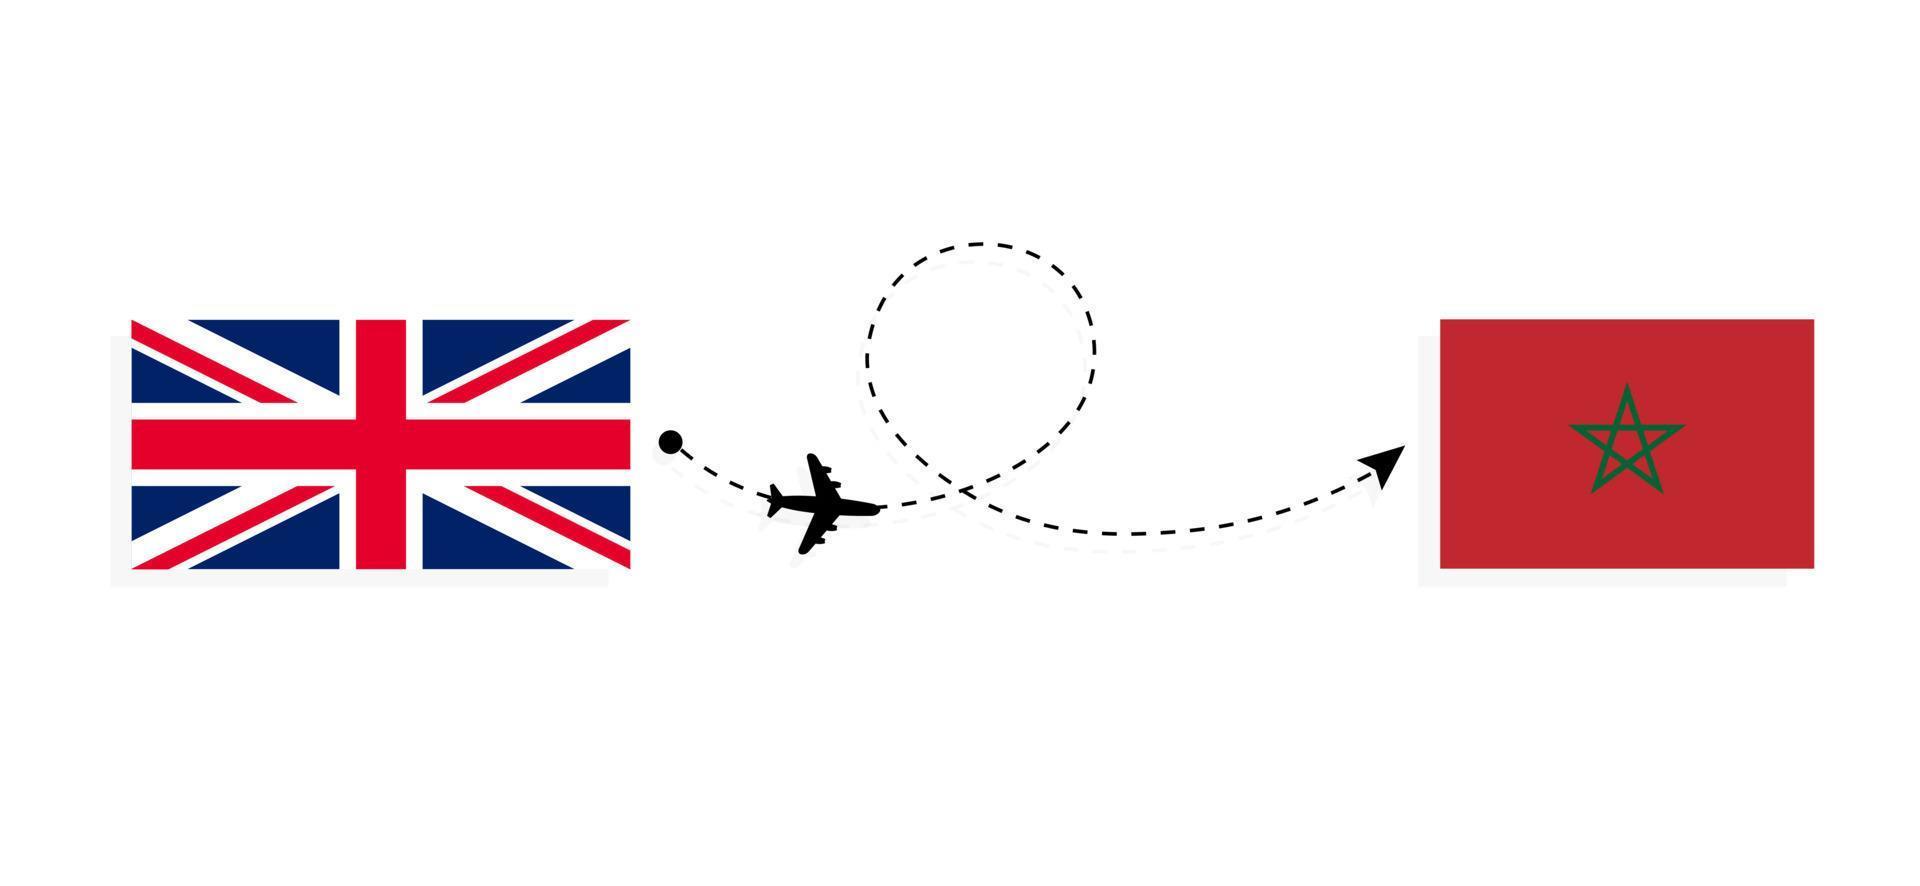 flyg och resor från Storbritannien till Marocko med passagerarflygplan vektor